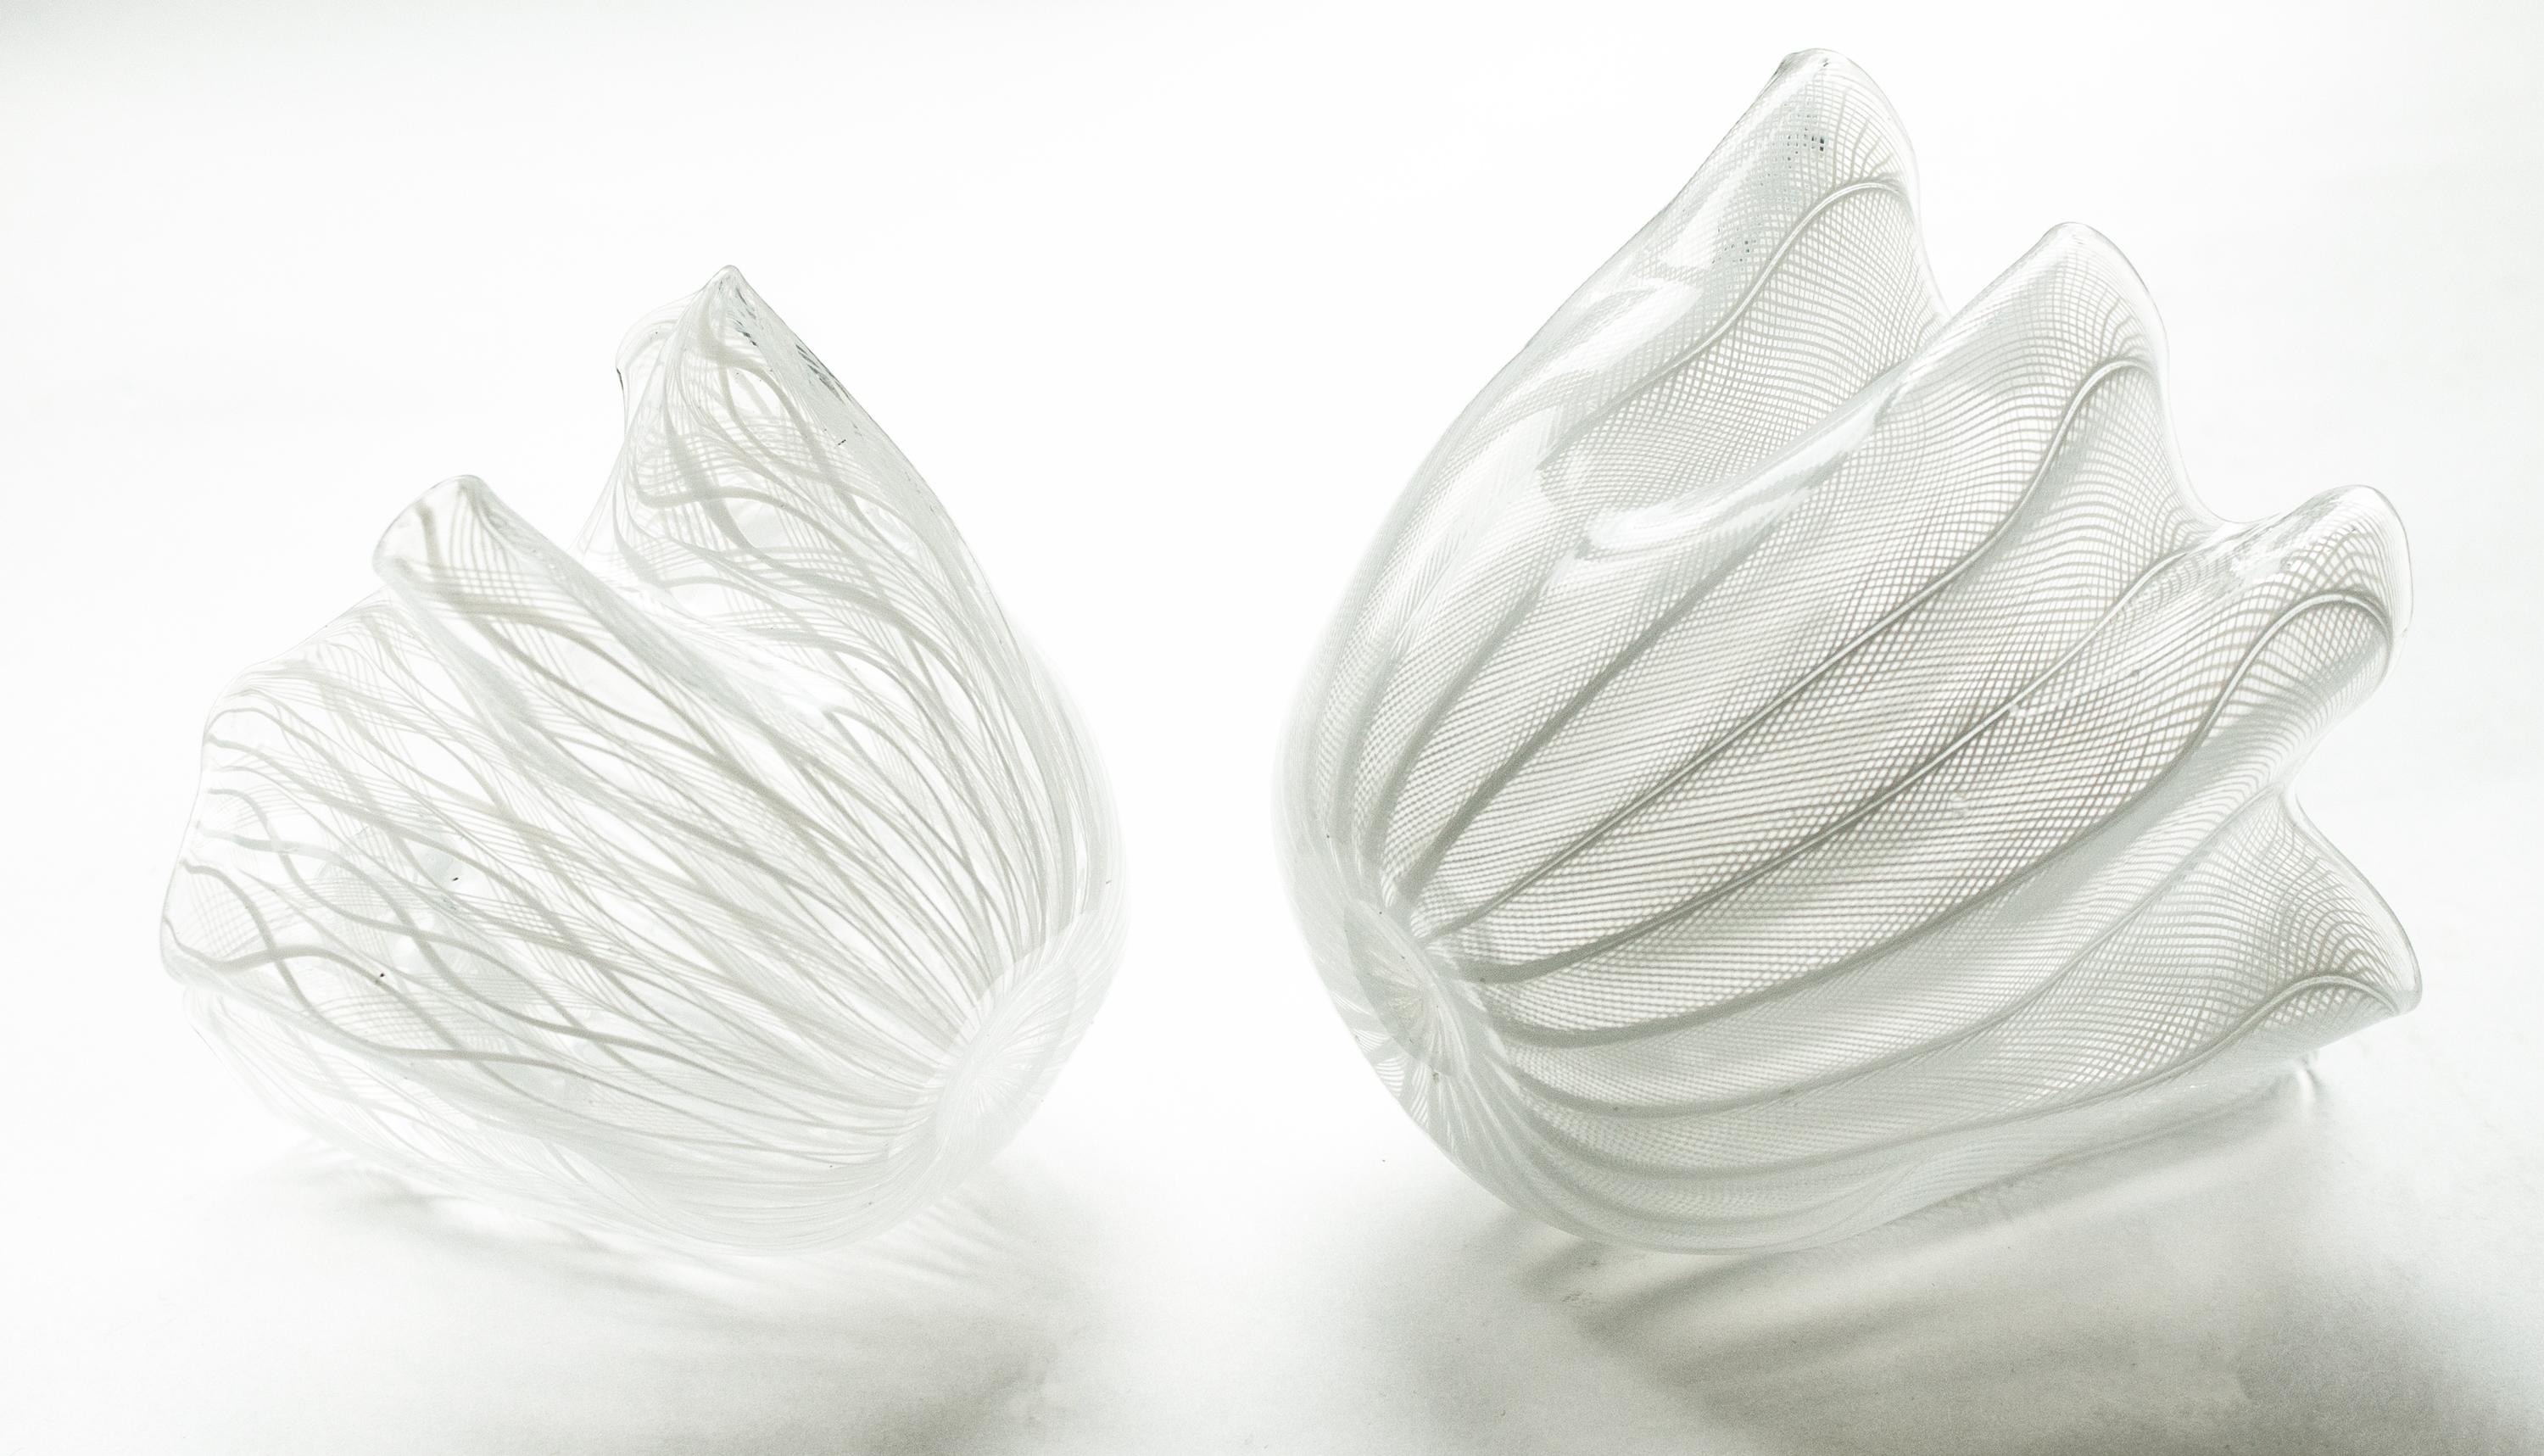 Trois vases/boules à mouchoirs de Murano fabriqués à Murano, en Italie, connue pour son art du verre exceptionnel, sont désormais disponibles. Ces pièces soufflées à la main présentent un design captivant composé de délicats rubans blancs de